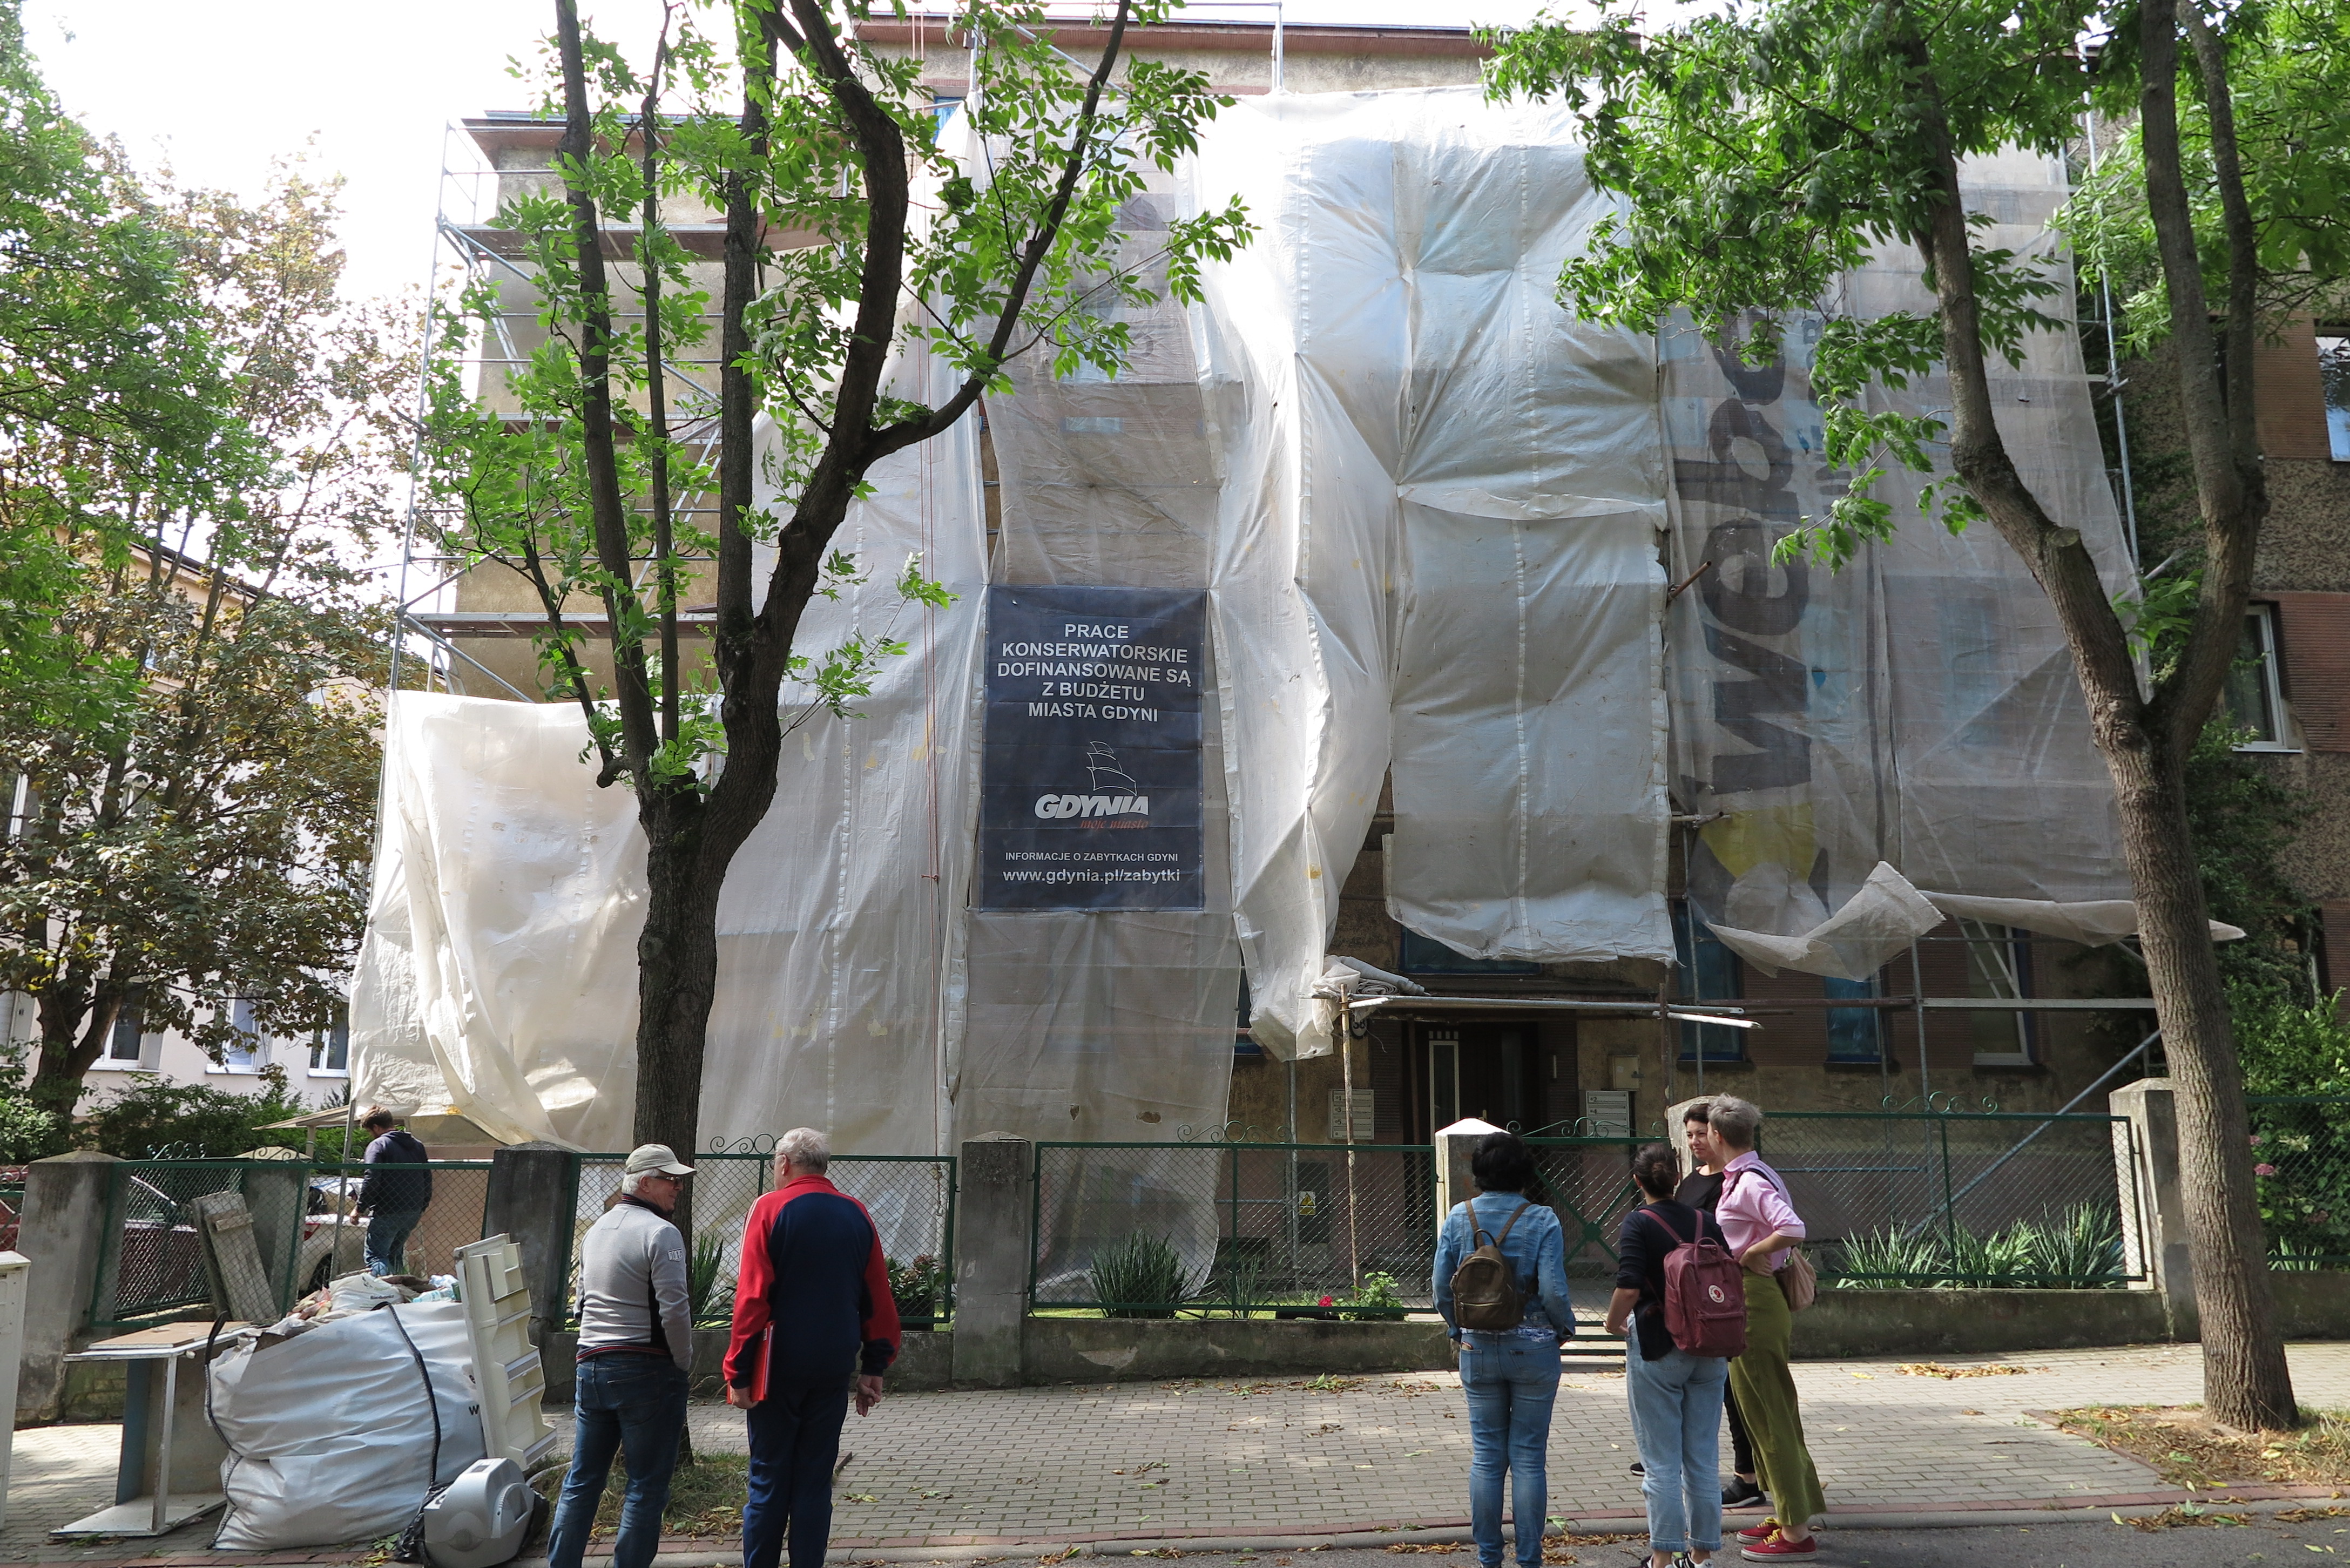 Budynek przy ul. Krasickiego 38 w trakcie remontu, fot. Biuro Miejskiego Konserwatora Zabytków w Gdyni